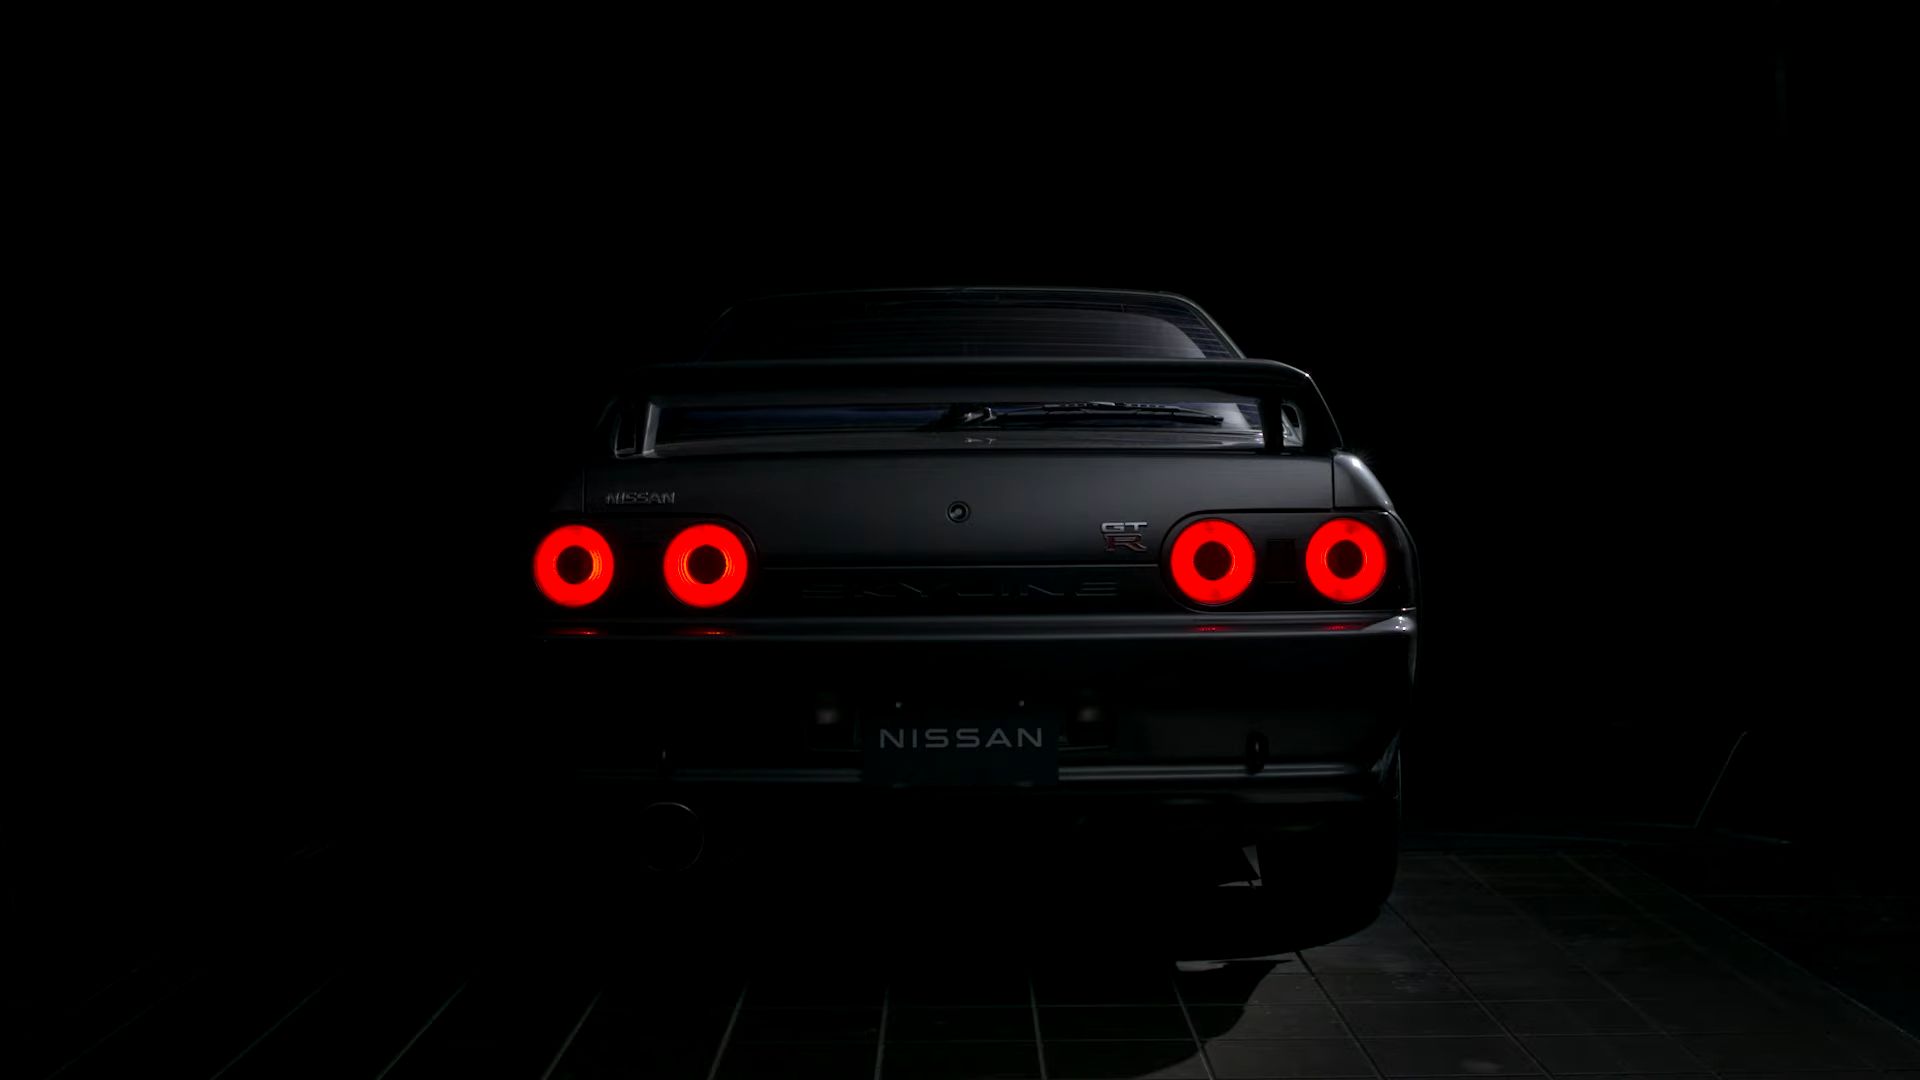 Autoass Media on X: Nissan R32 Skyline GT-R